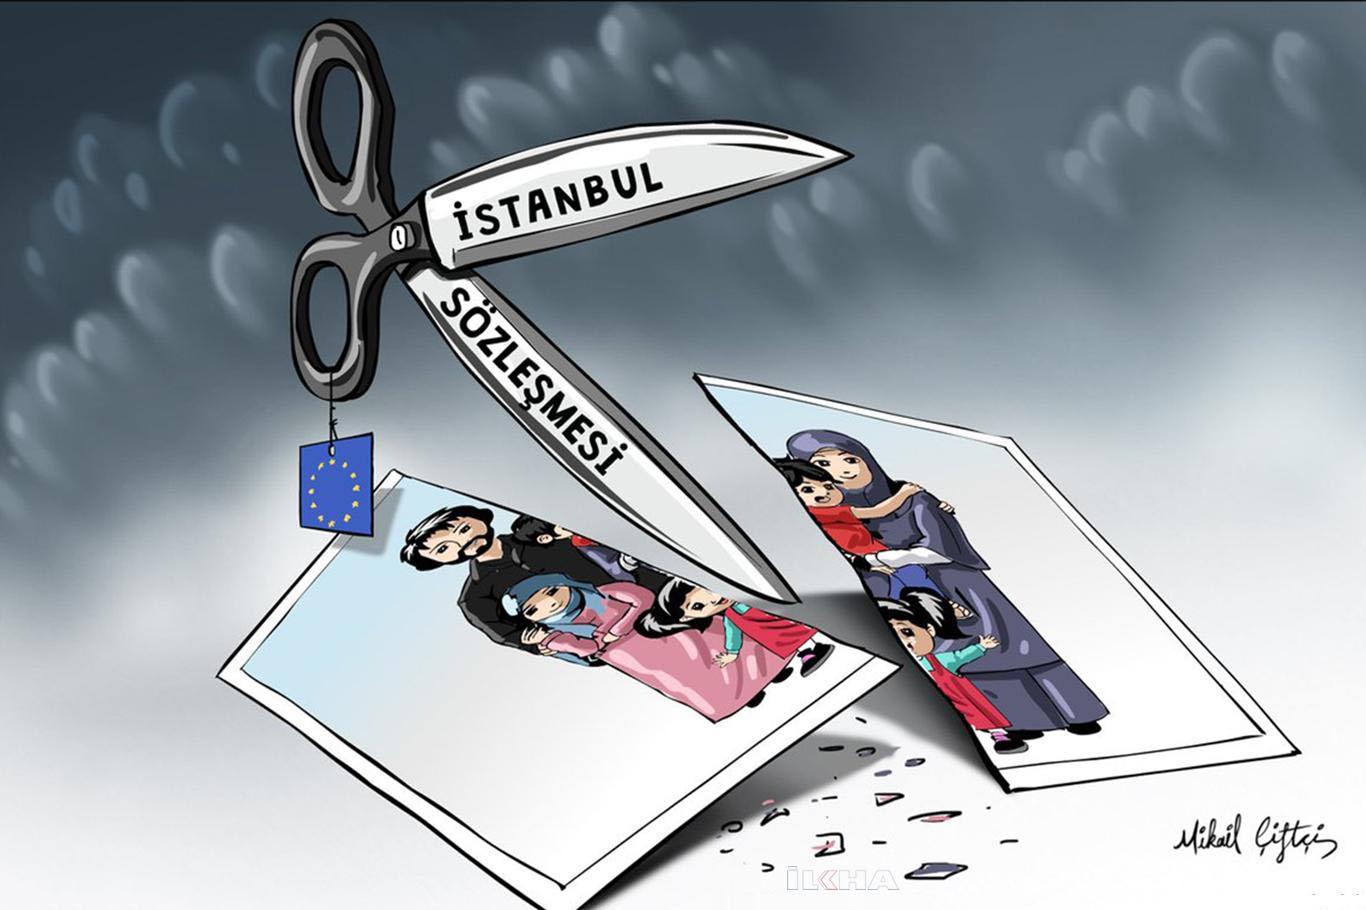 "İstanbul sözleşmesinde yer alan kavramlar insanın varoluşuna saldırıdır"